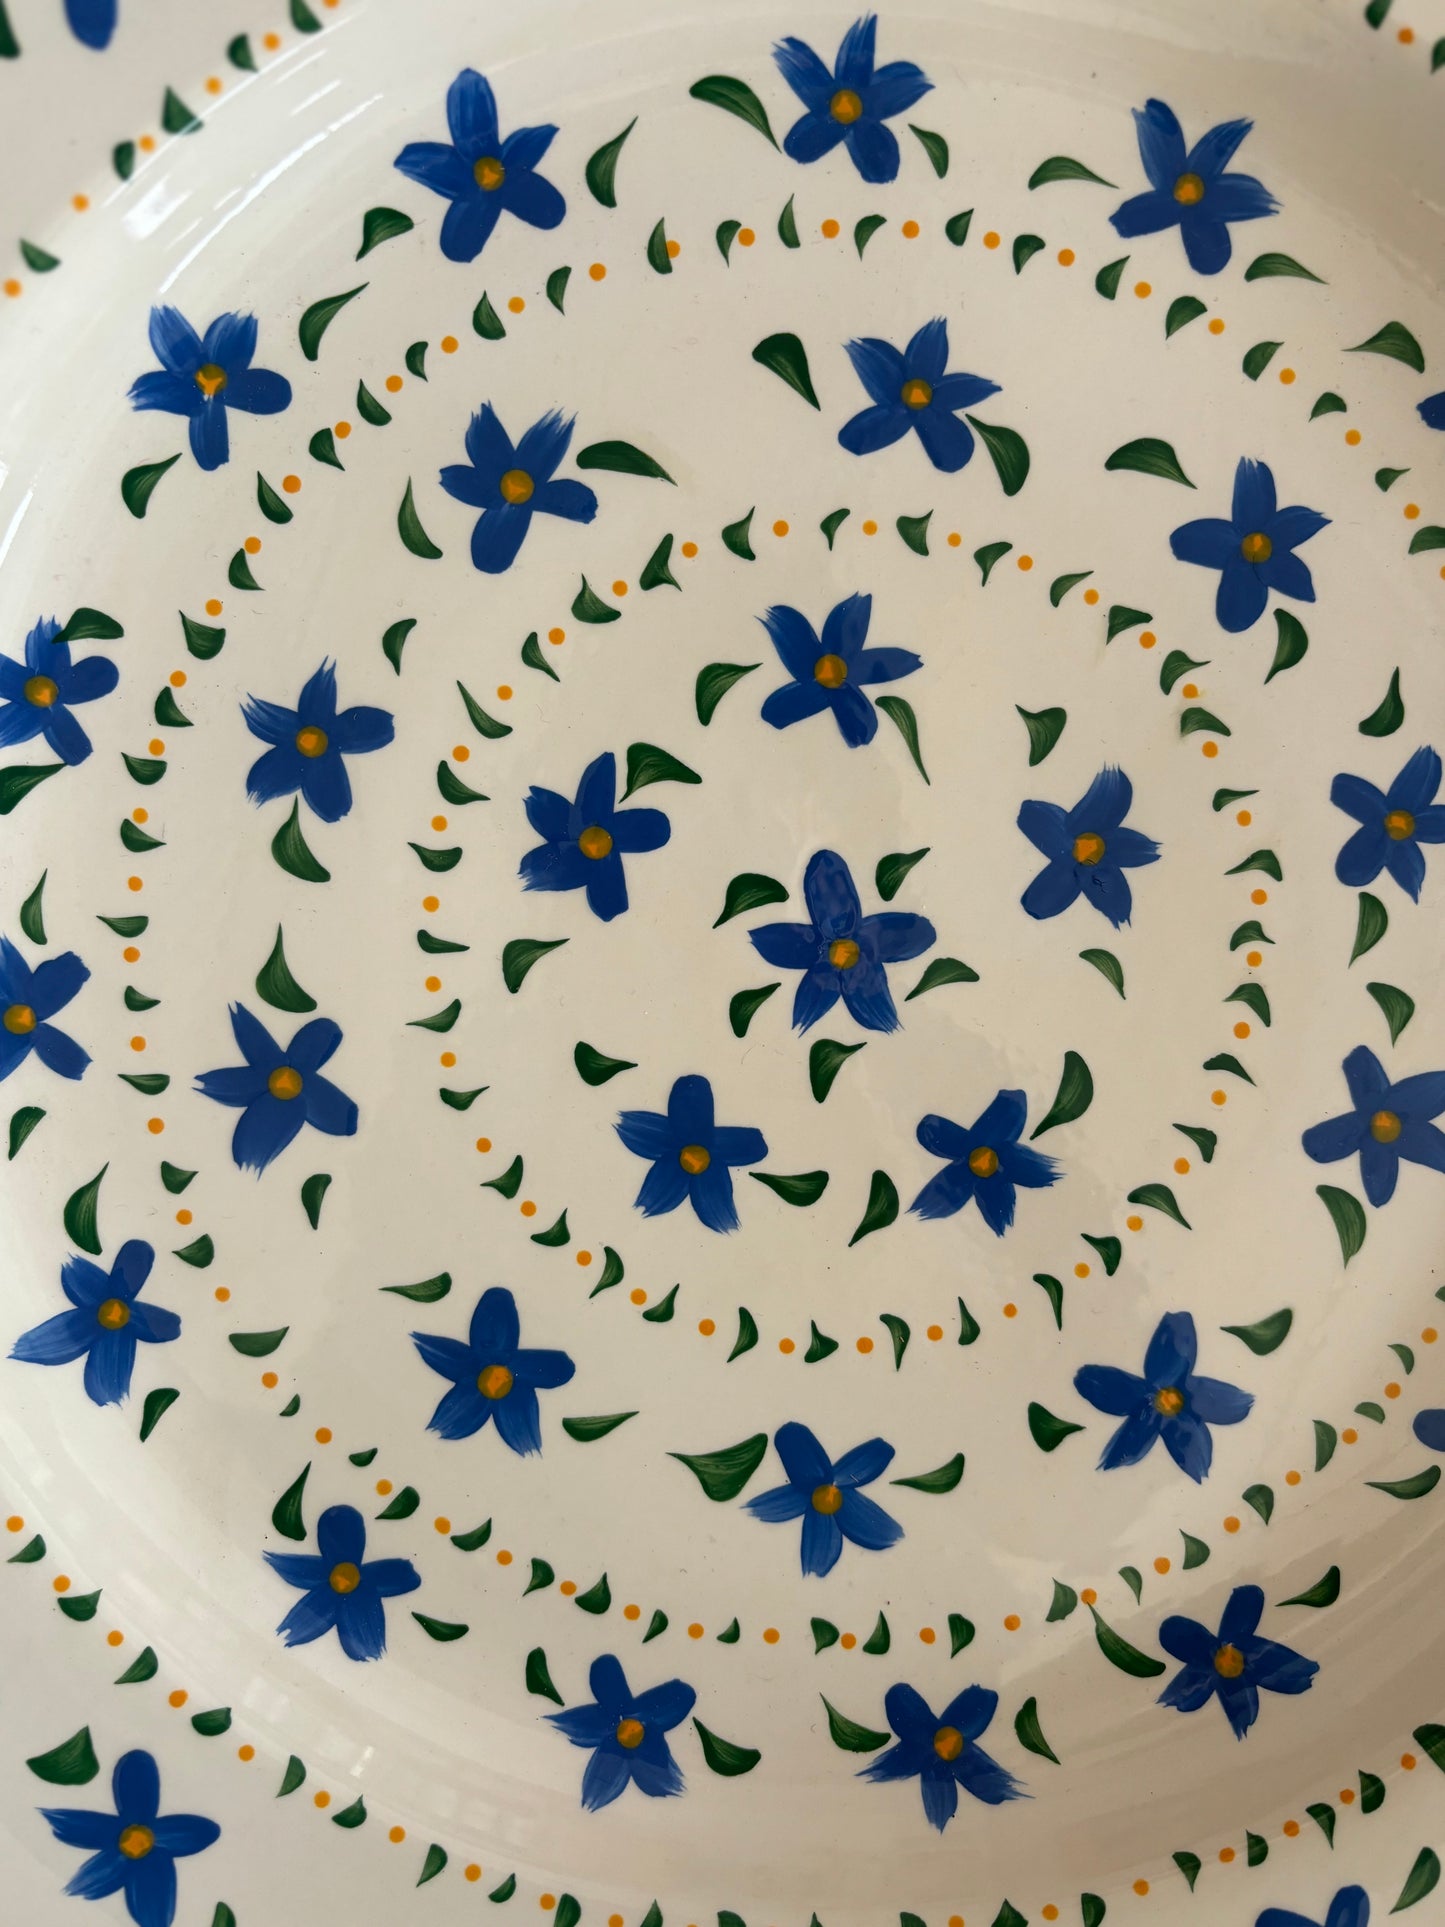 Blue Floral Platter